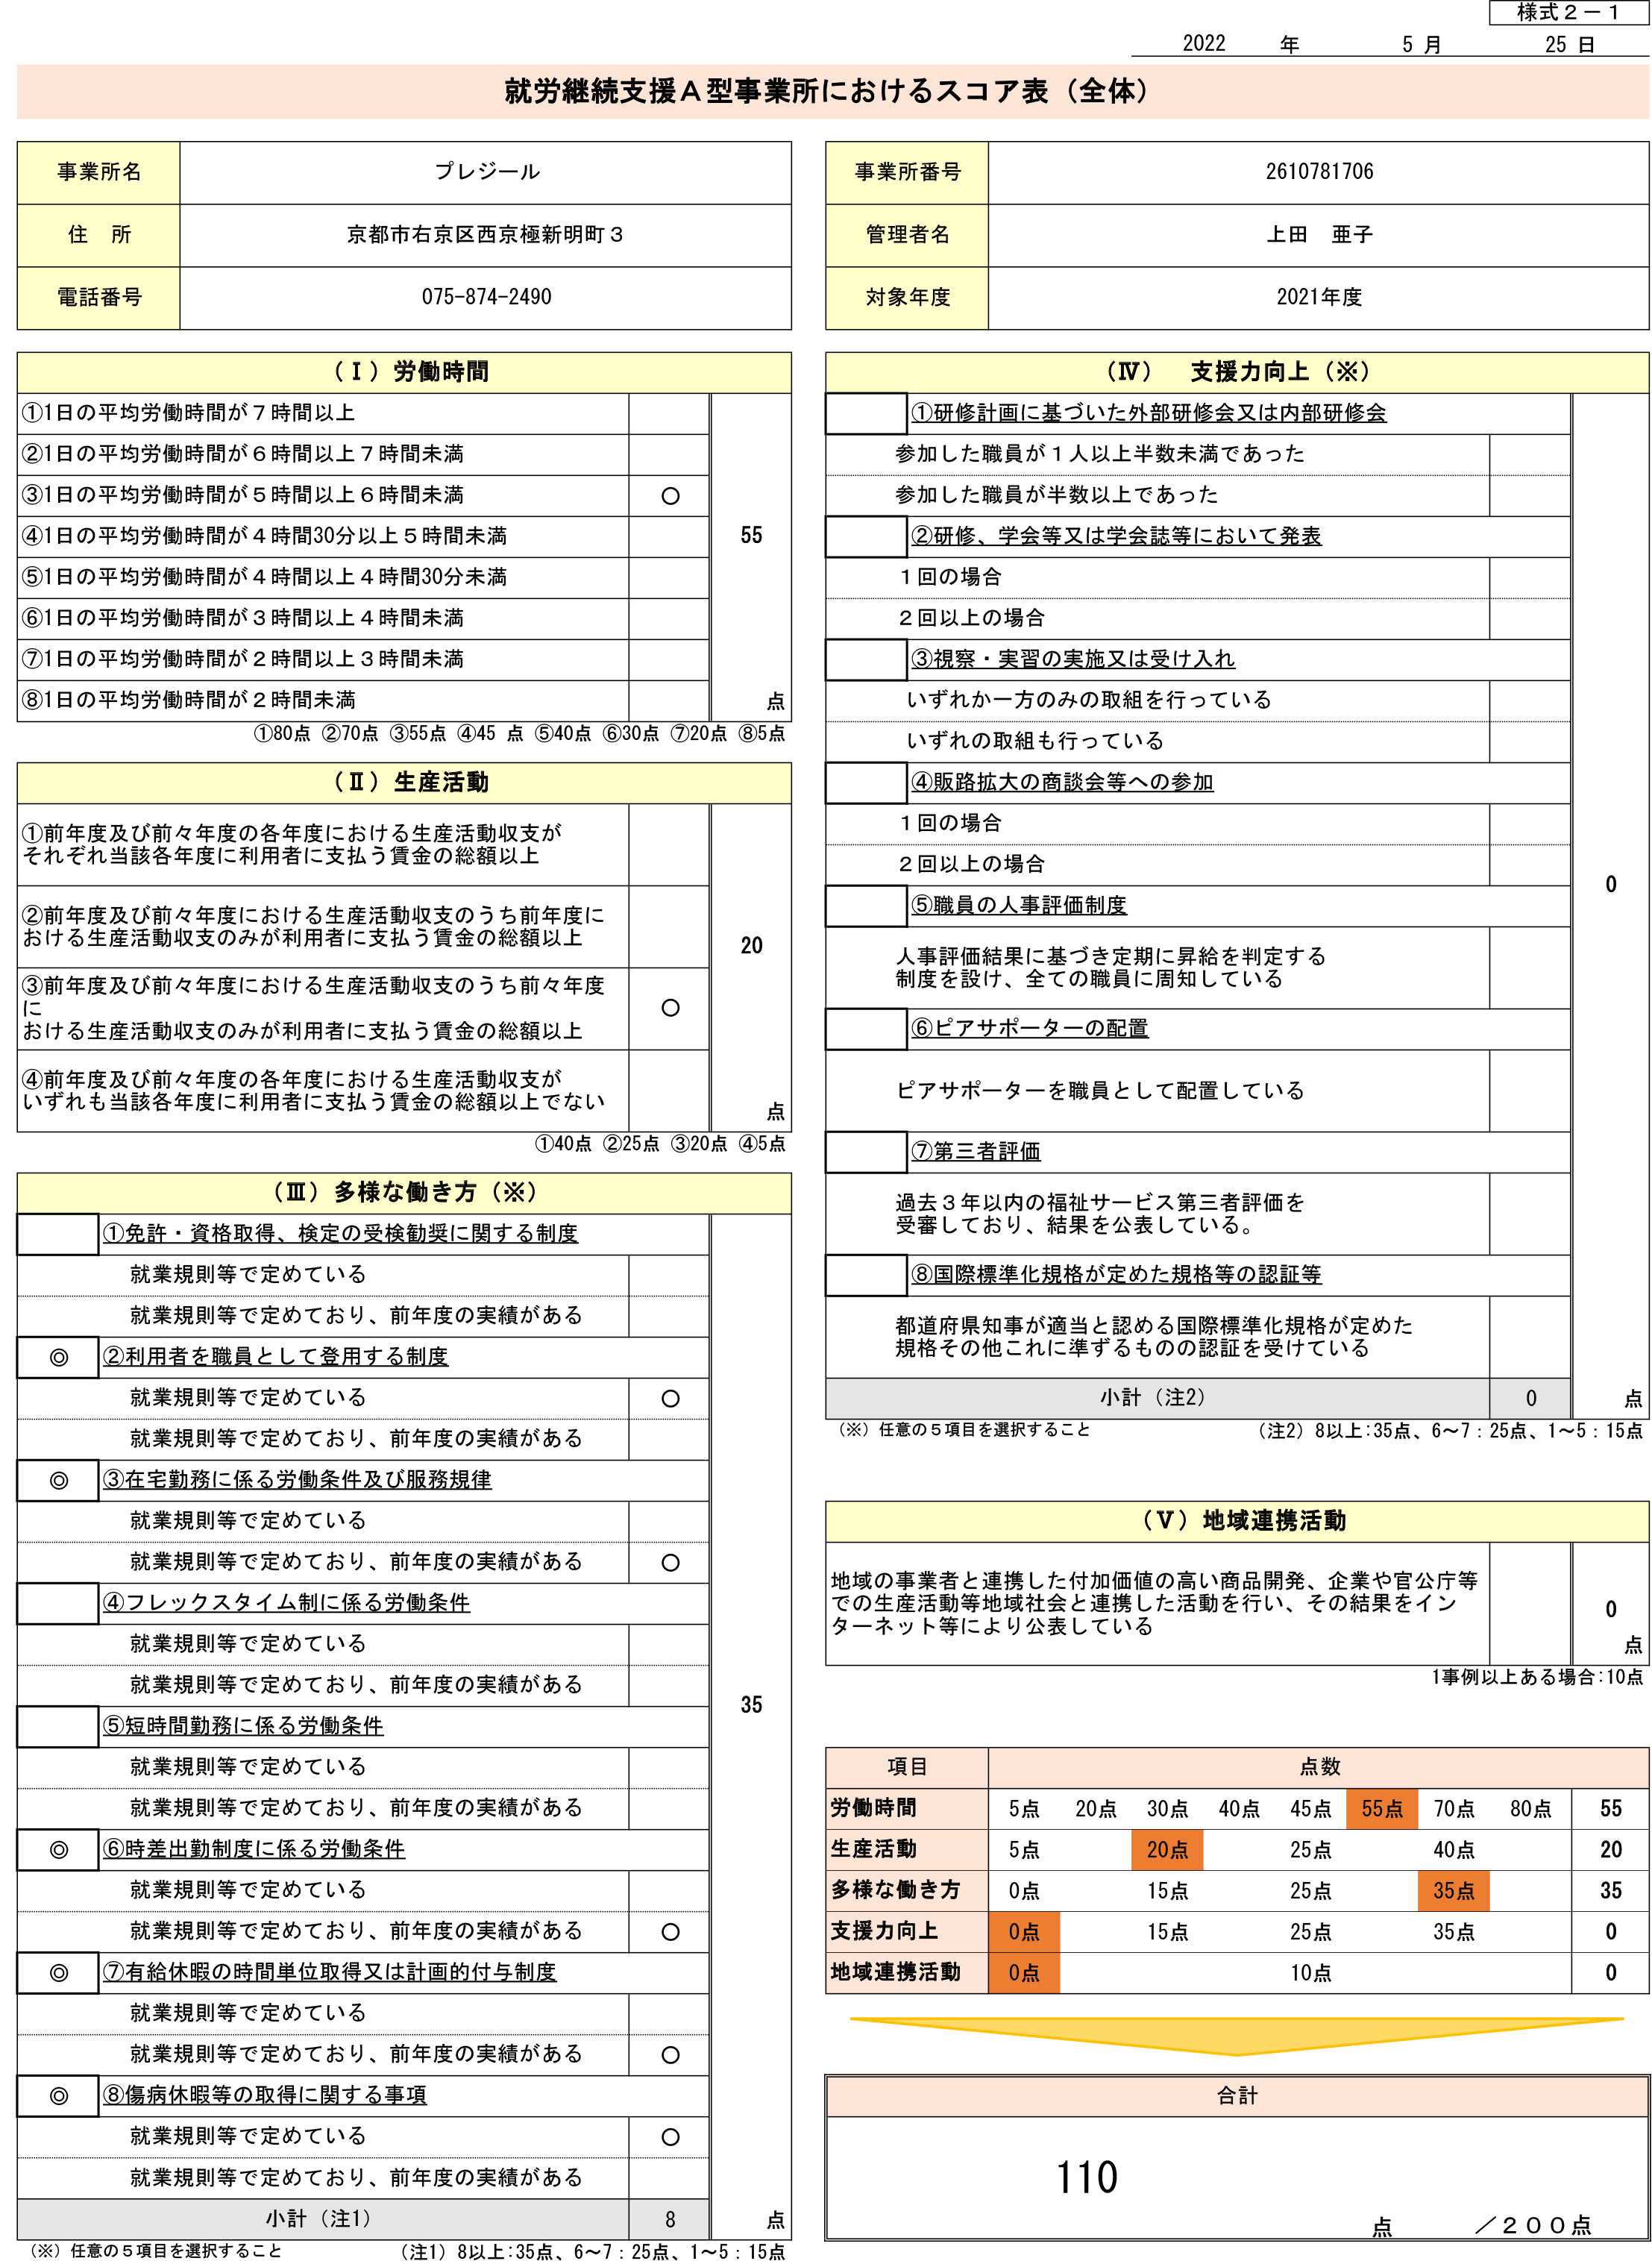 スコア表公表様式2-1（R4年度）1